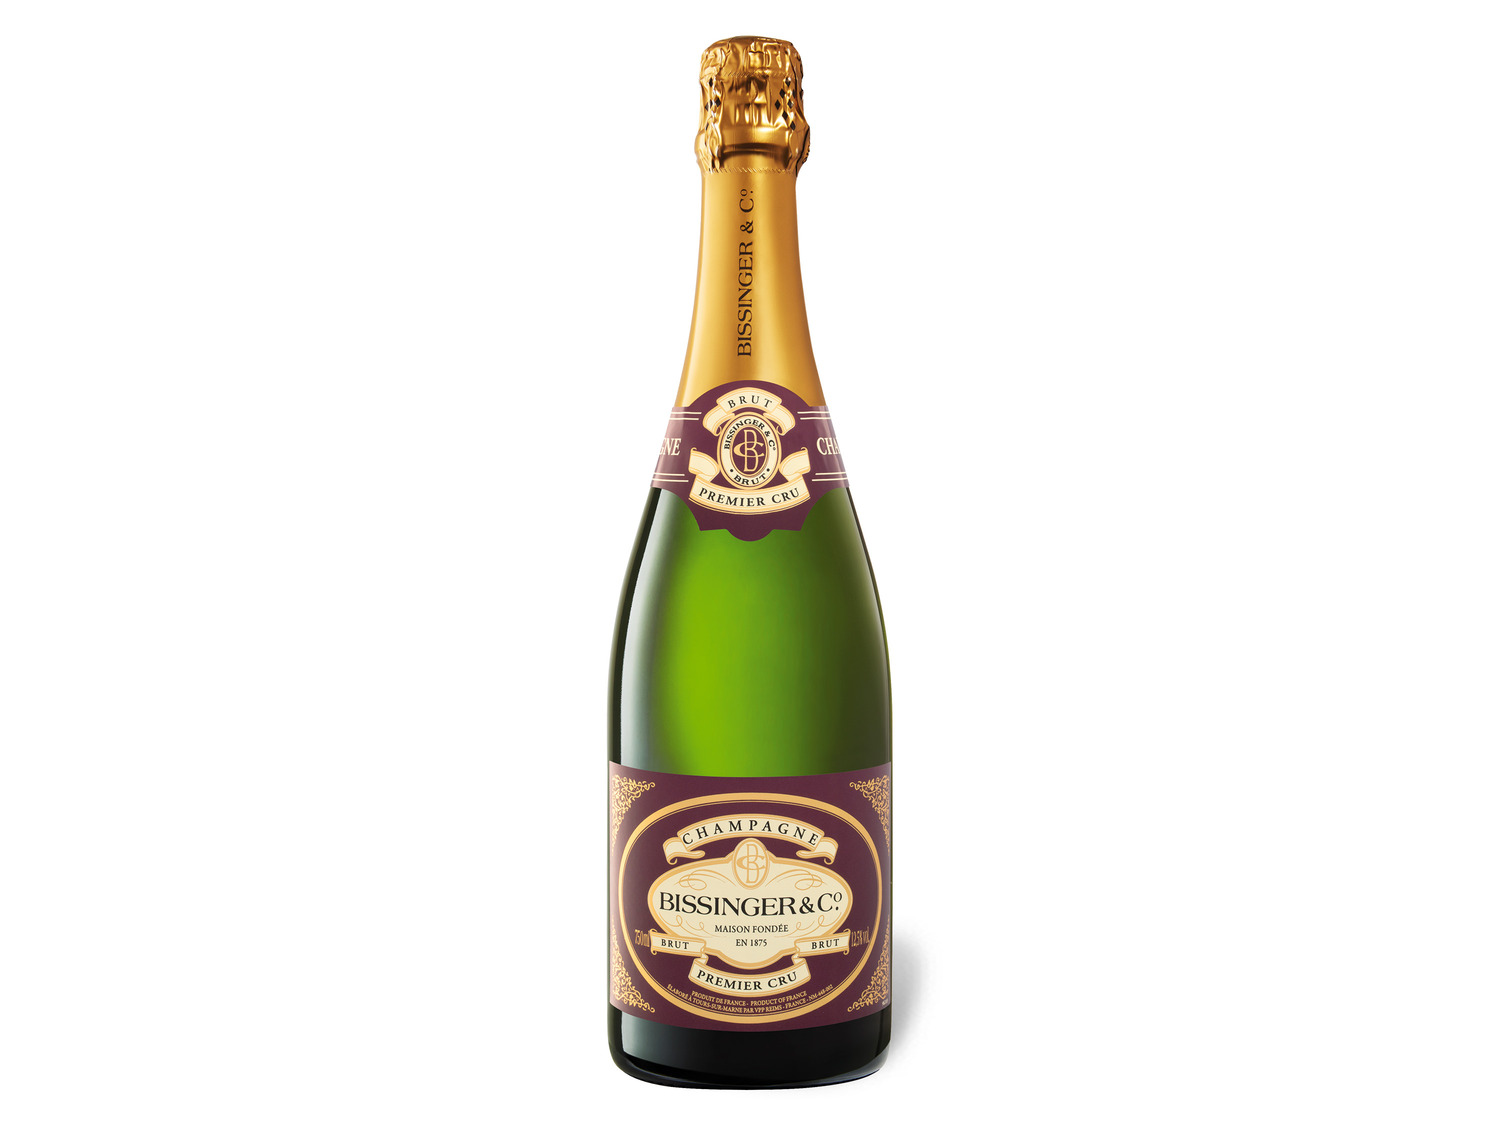 Bissinger Premier Cru brut Champagner